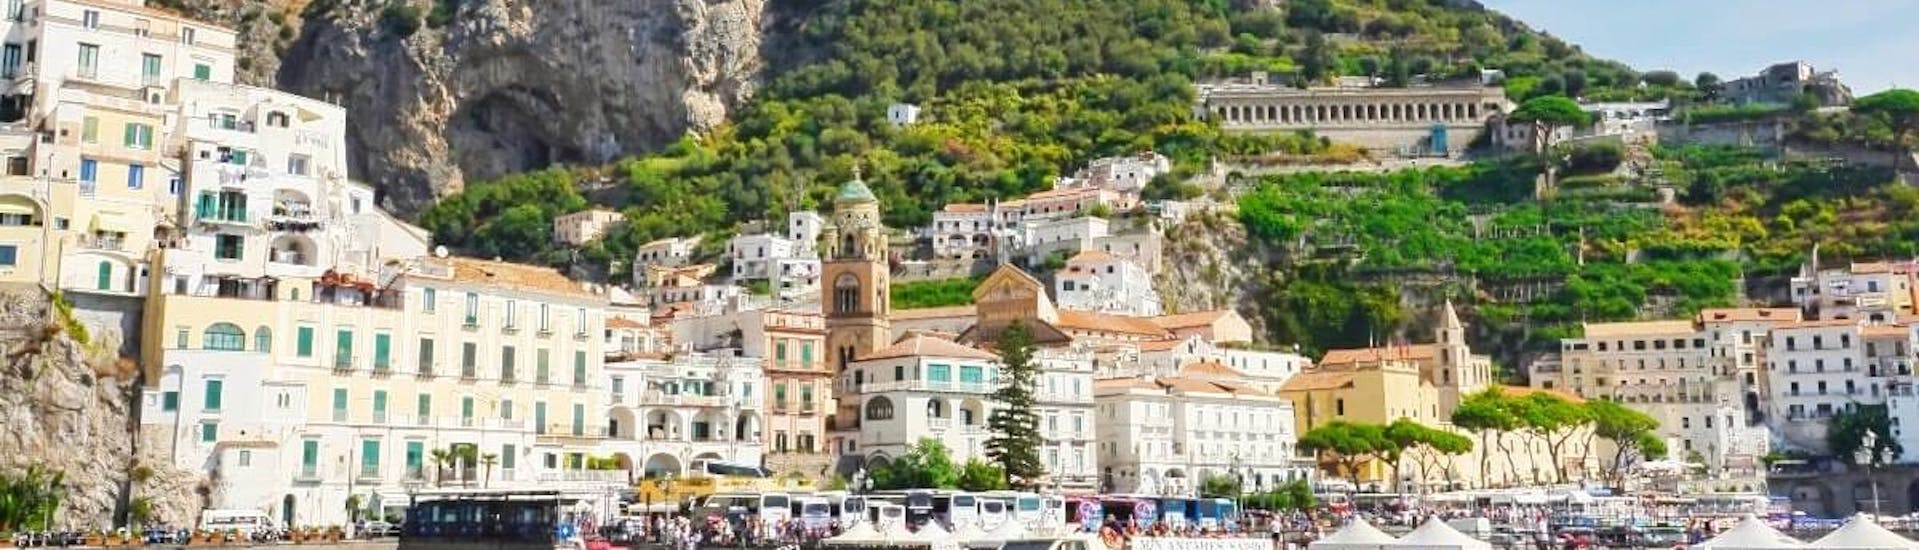 Uitzicht op Amalfi dat bezocht kan worden tijdens de Boottocht van Pozzuoli naar Capri en Amalfi met Lunch georganiseerd door Gestour Pozzuoli.